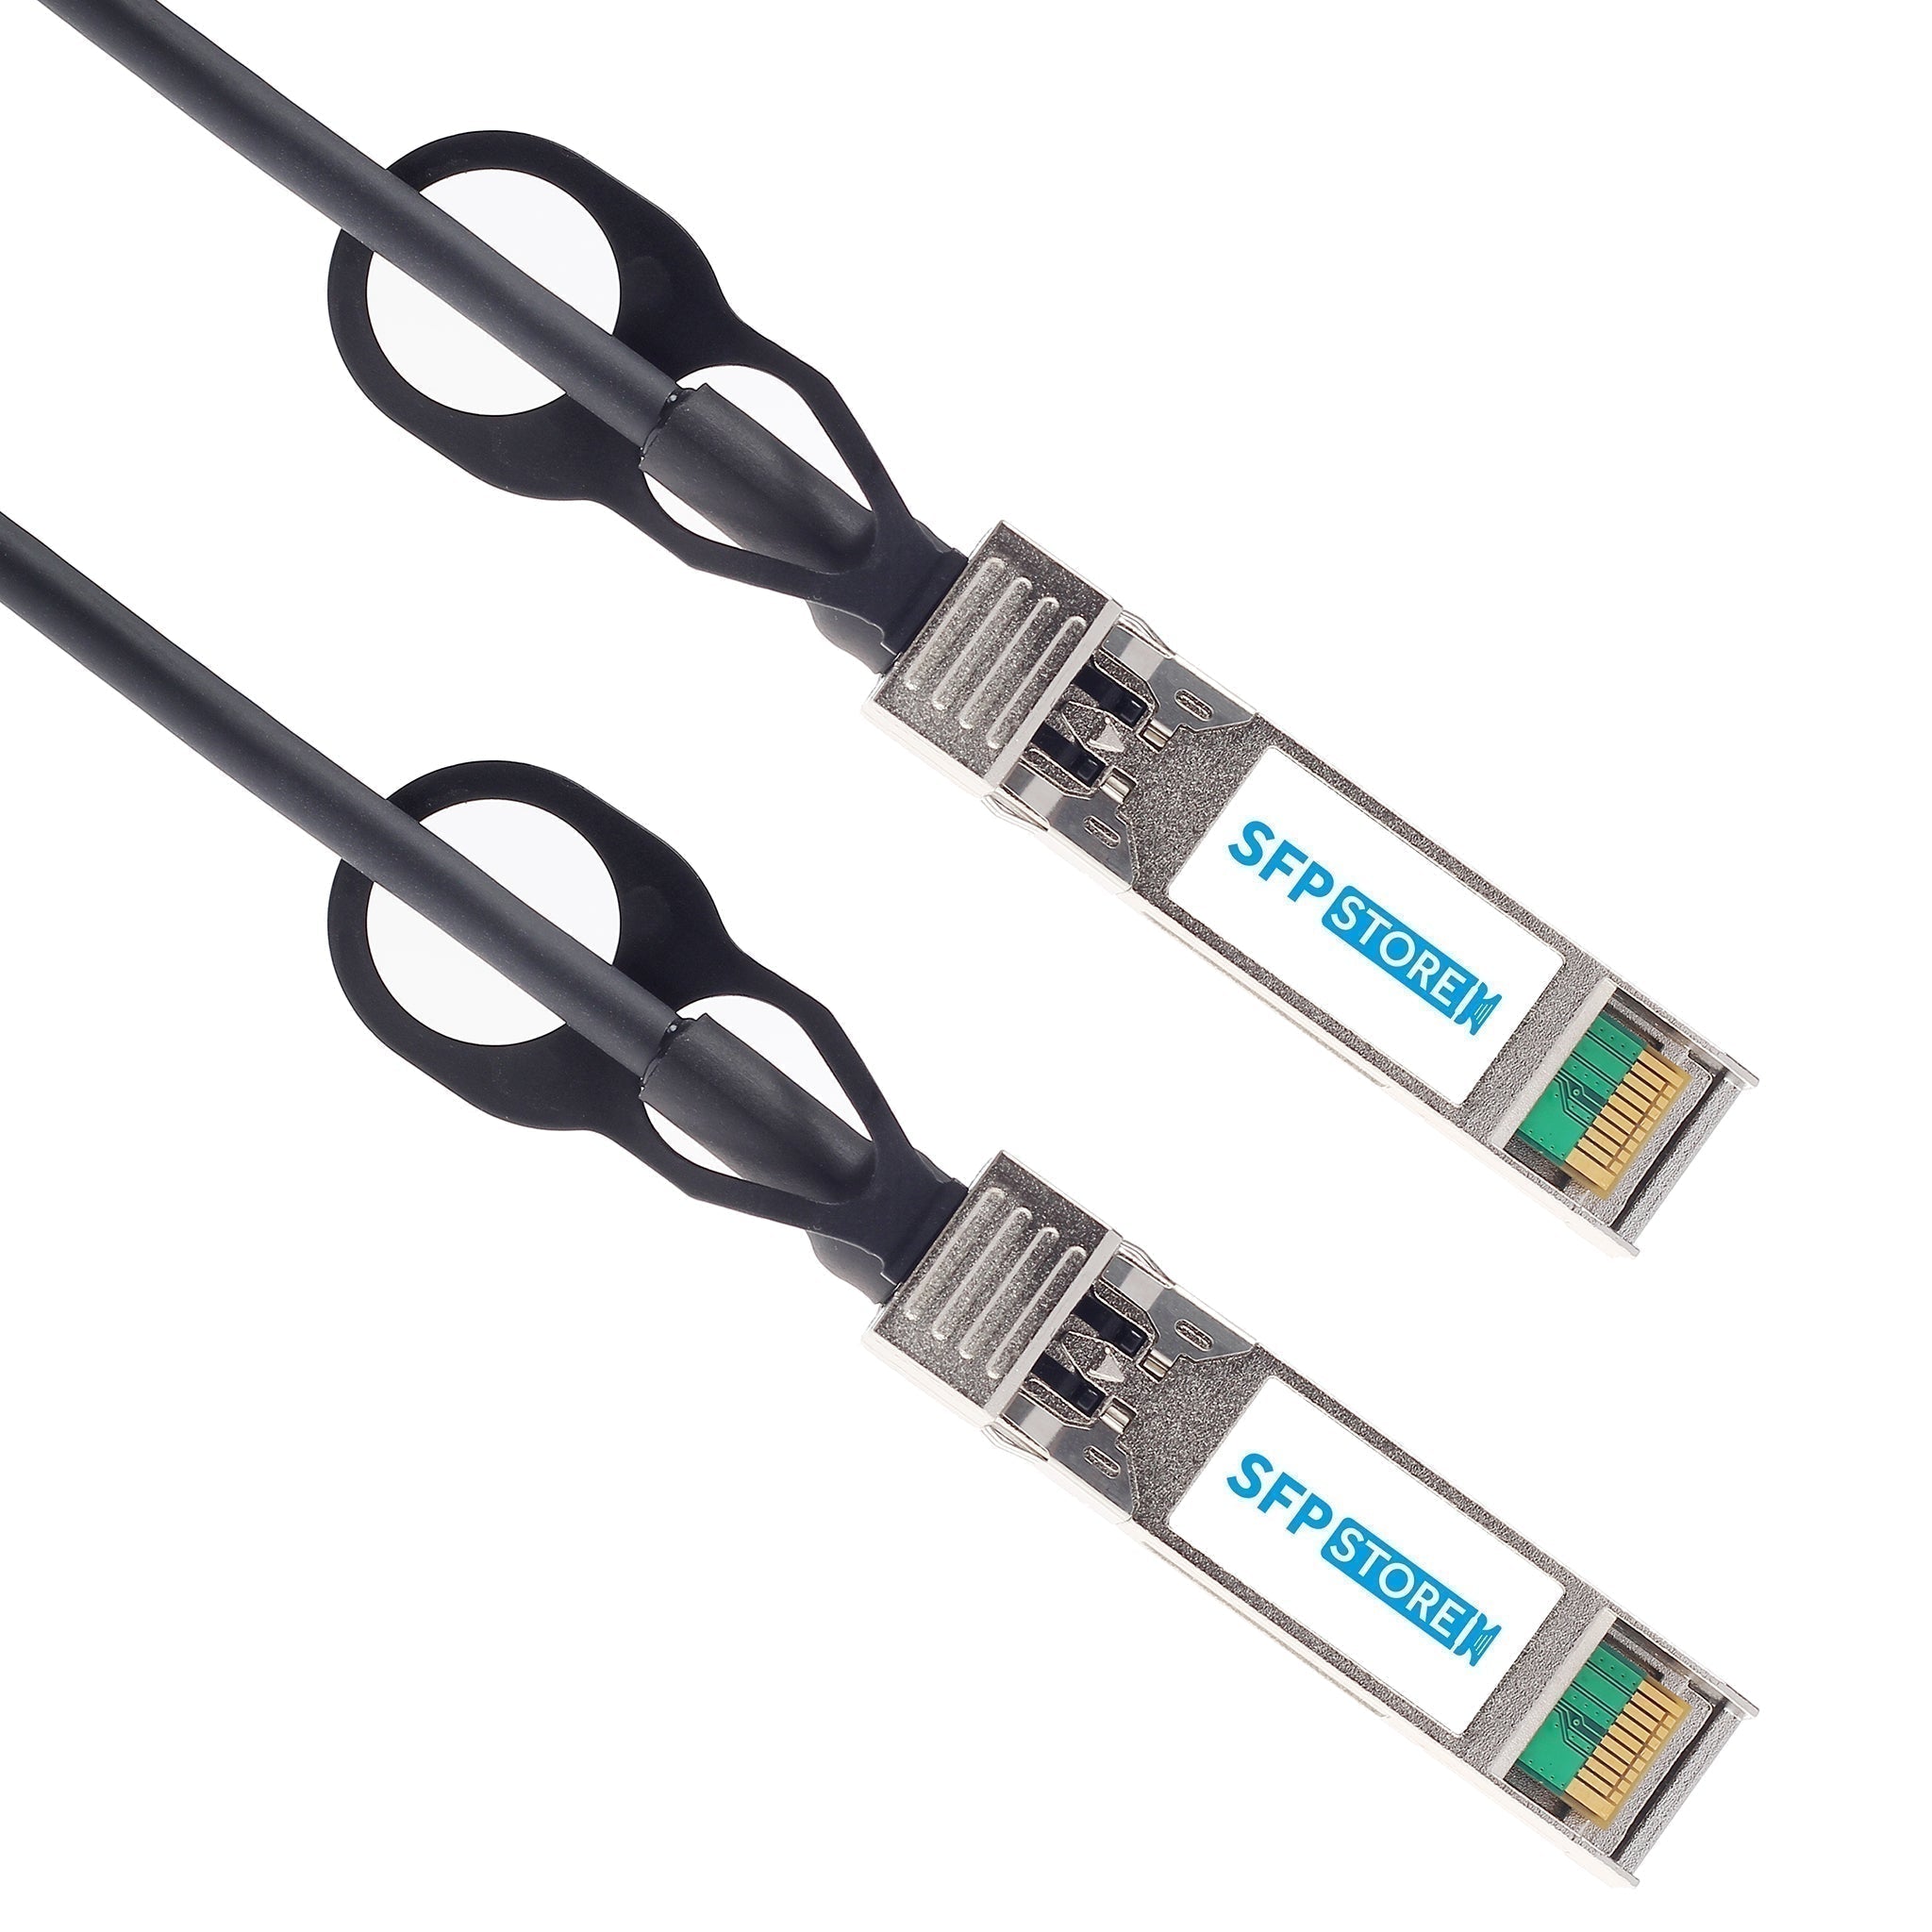 QSFP-100G-C3M-C - 3m Alcatel-Lucent (Nokia) Compatible 100G QSFP28 Passive Direct Attach Copper Twinax Cable